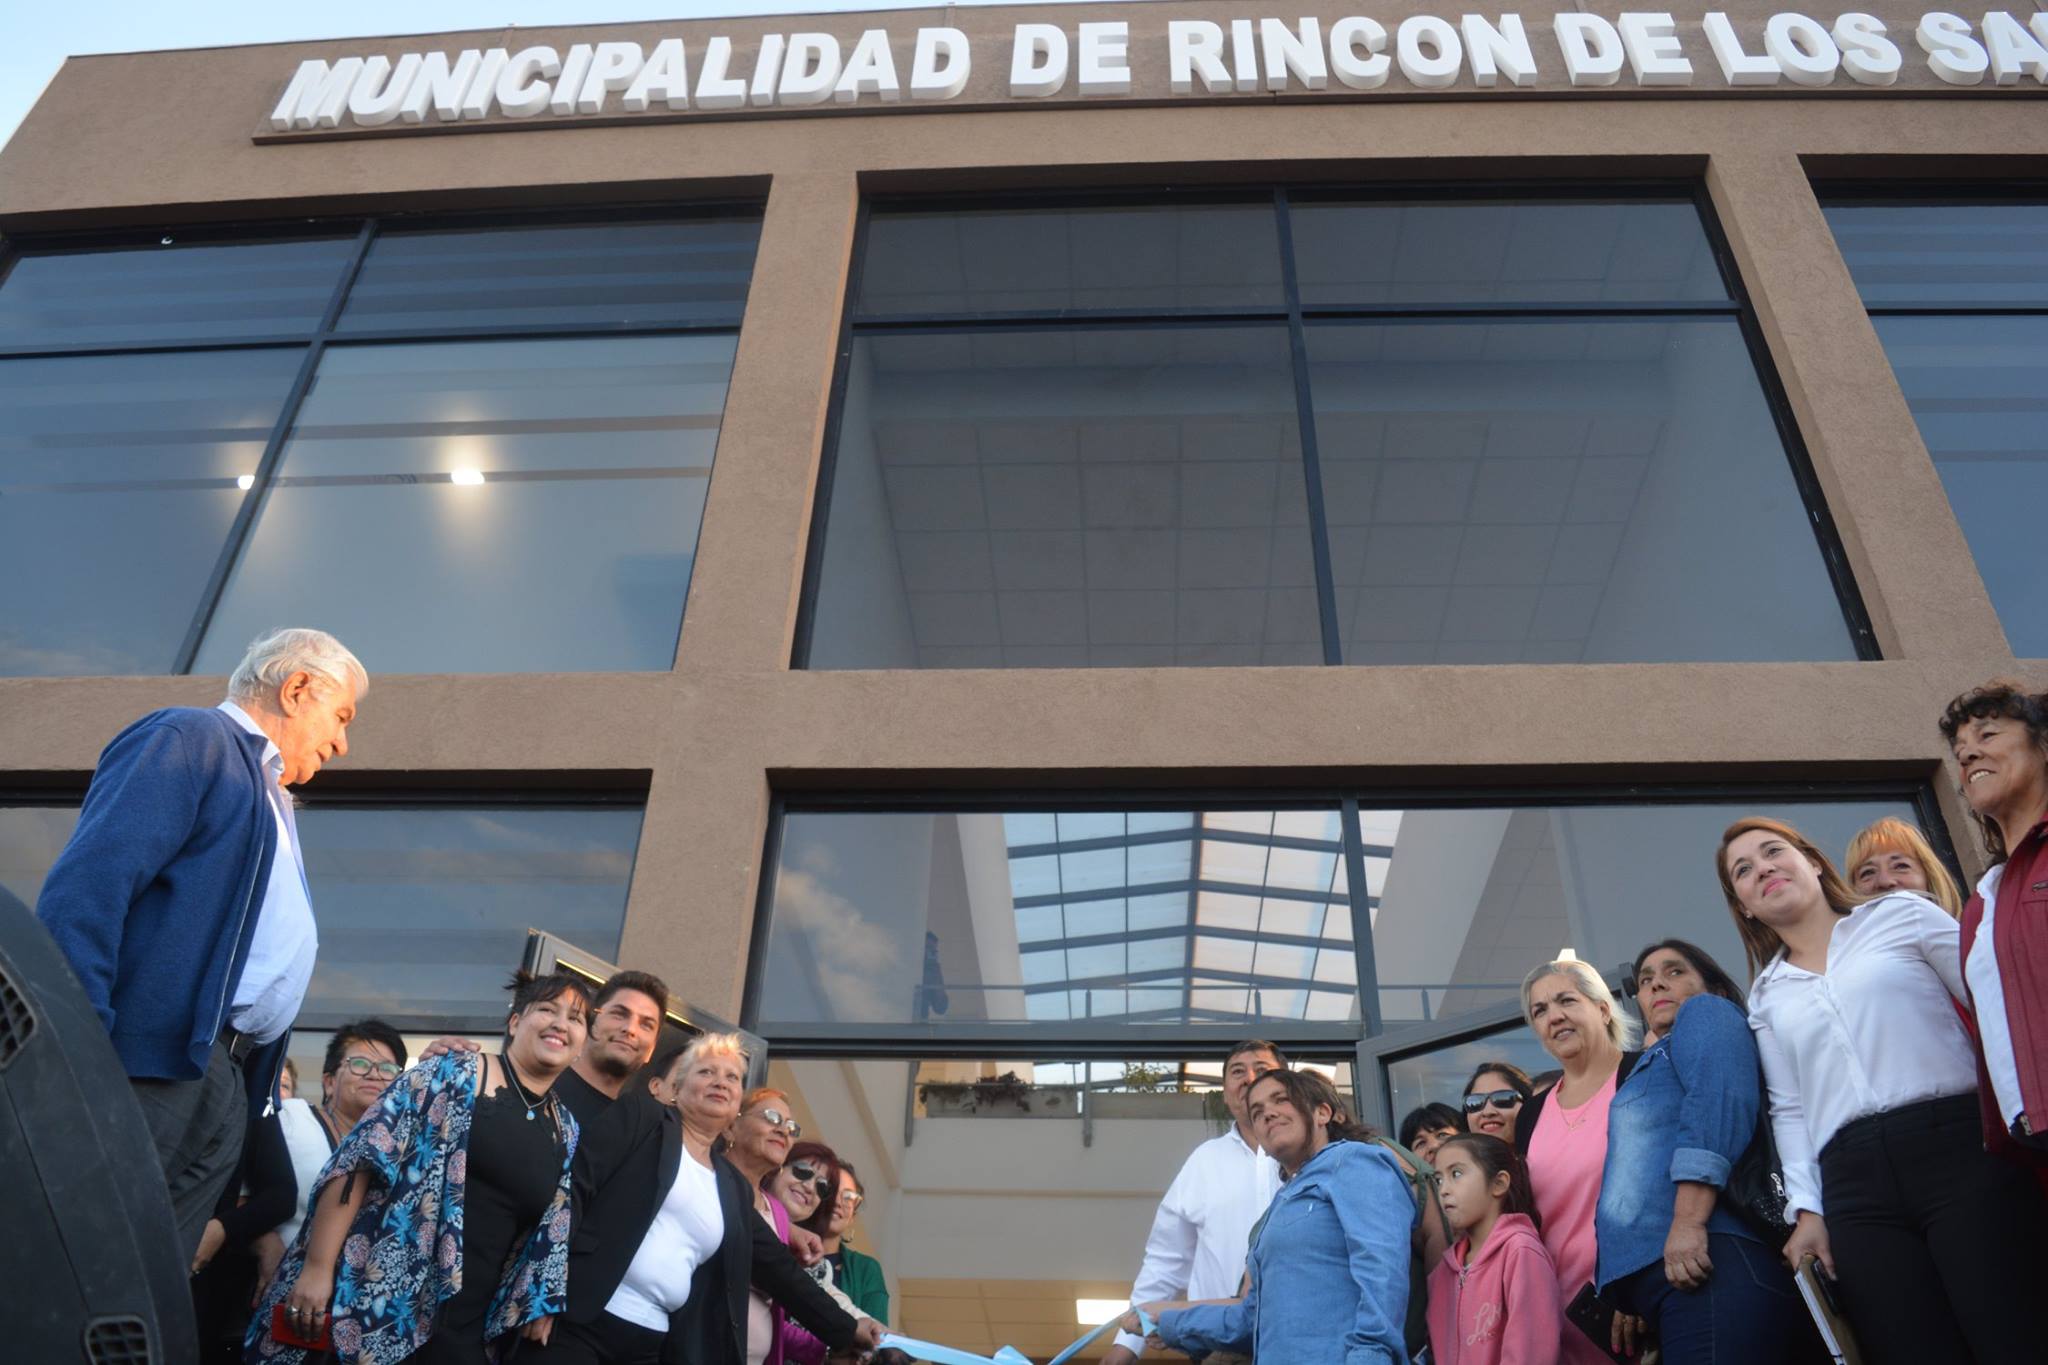 En marzo de este año, el intendente Marcelo Rucci inauguró la municipalidad en su moderna nueva sede. Gentileza Municipalidad de Rincón de los Sauces